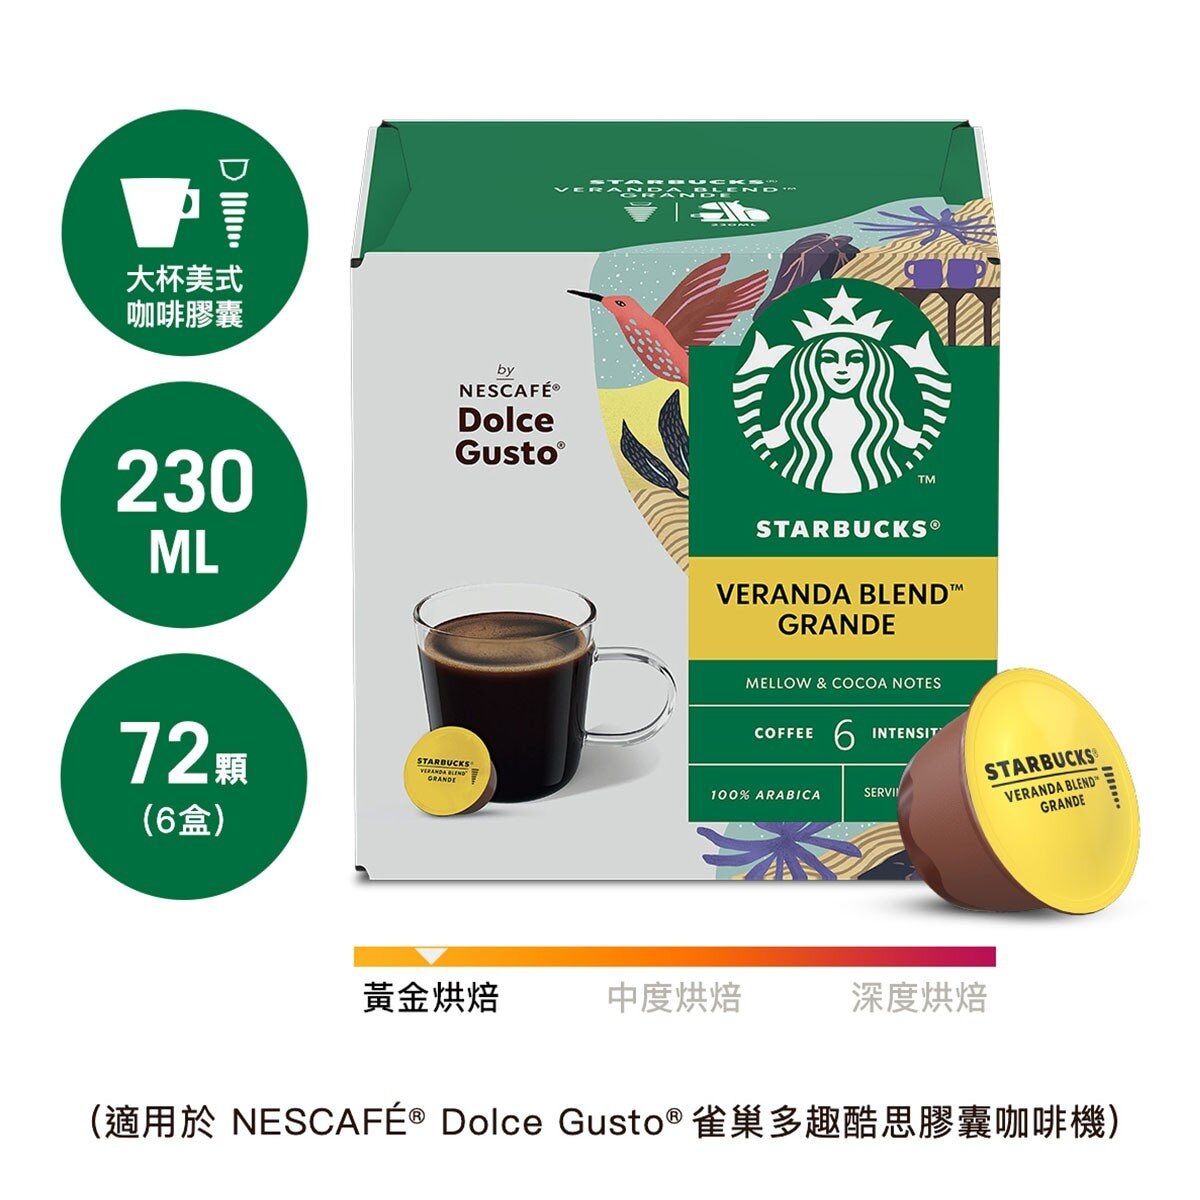 星巴克 閑庭美式咖啡膠囊 72顆 適用NESCAFE Dolce Gusto機器